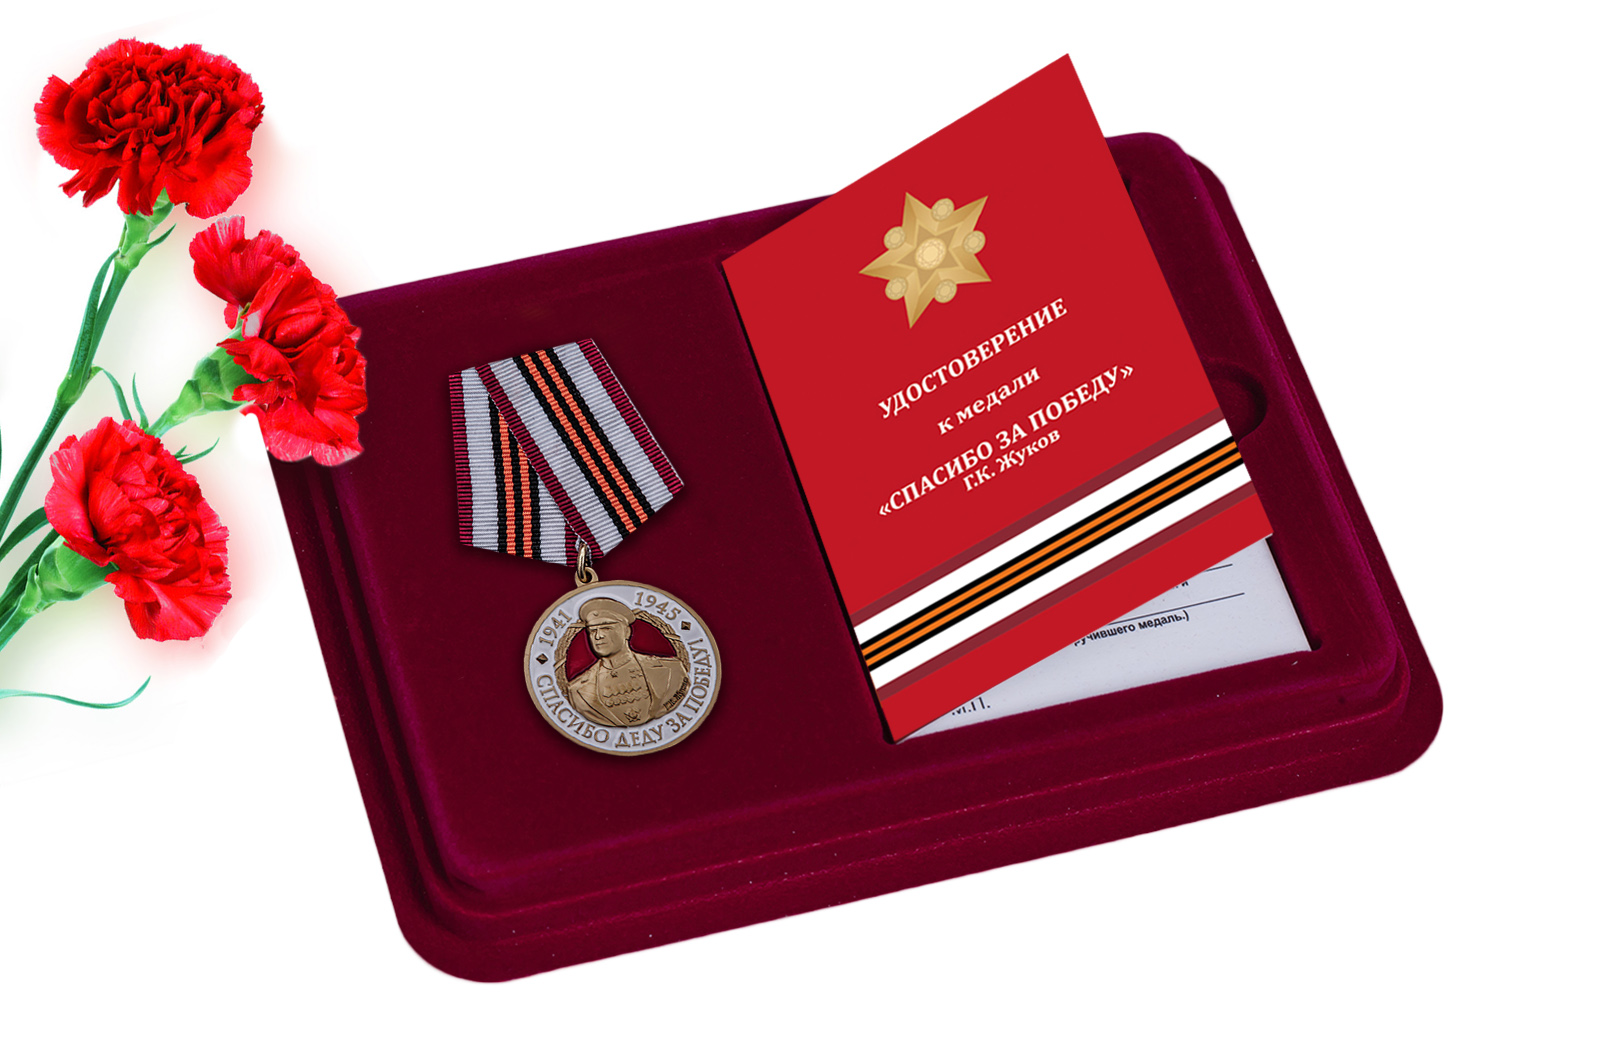 Купить медаль с Жуковым Спасибо деду за Победу! онлайн выгодно